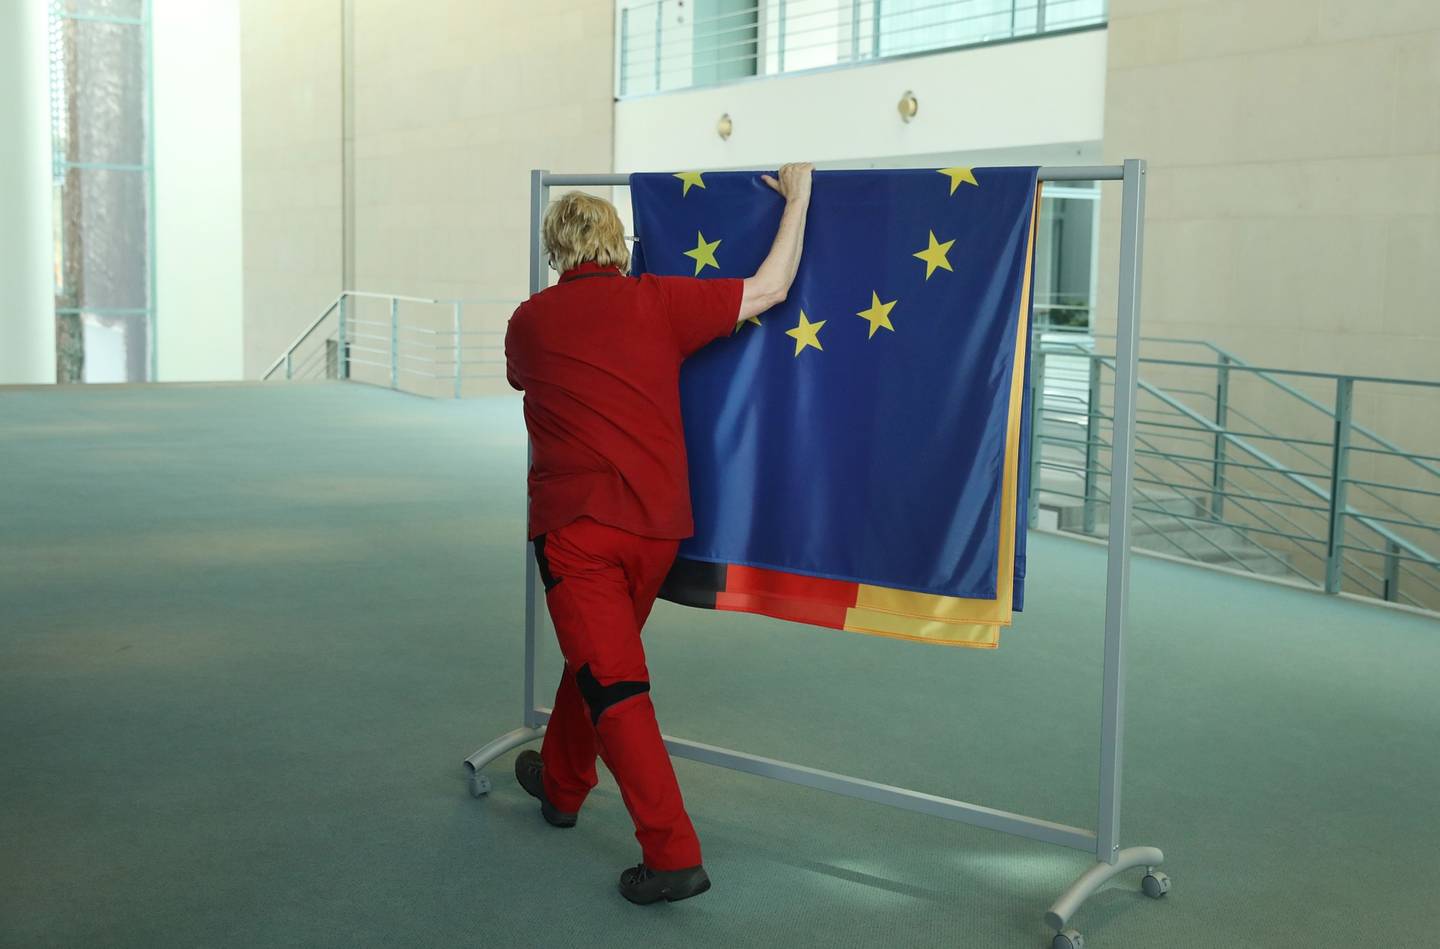 BERLÍN, ALEMANIA - 17 DE ABRIL: Un trabajador enrolla banderas, incluidas las de Alemania y la Unión Europea, tras la visita de Estado de la primera ministra de Nueva Zelanda, Jacinda Ardern, en la Cancillería el 17 de abril de 2018 en Berlín, Alemania. (Foto de Sean Gallup/Getty Images)